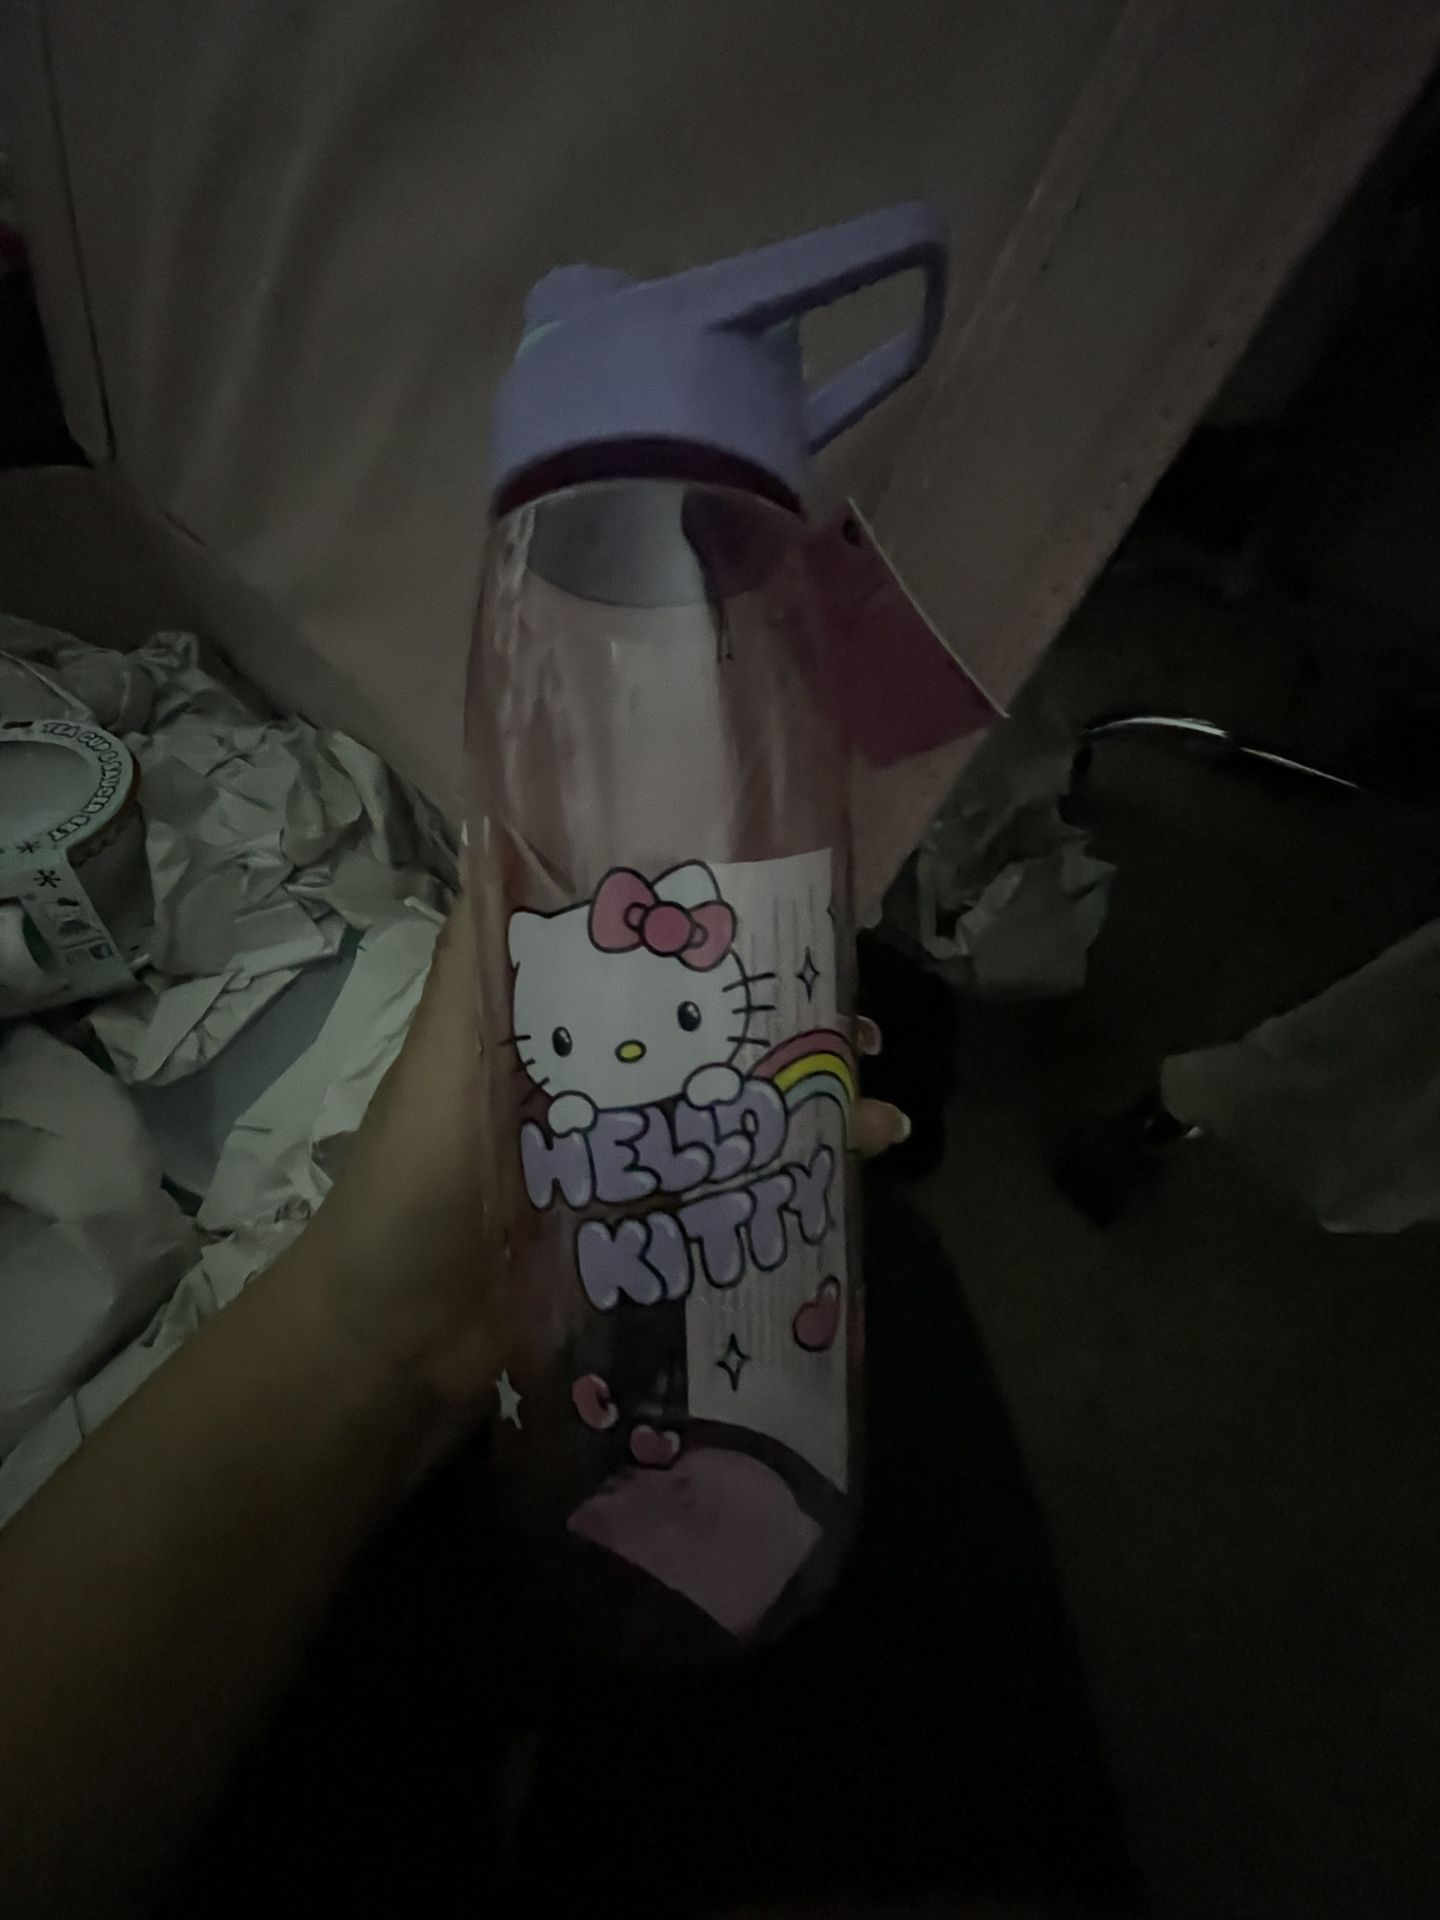 Hello Kitty Water Bottle